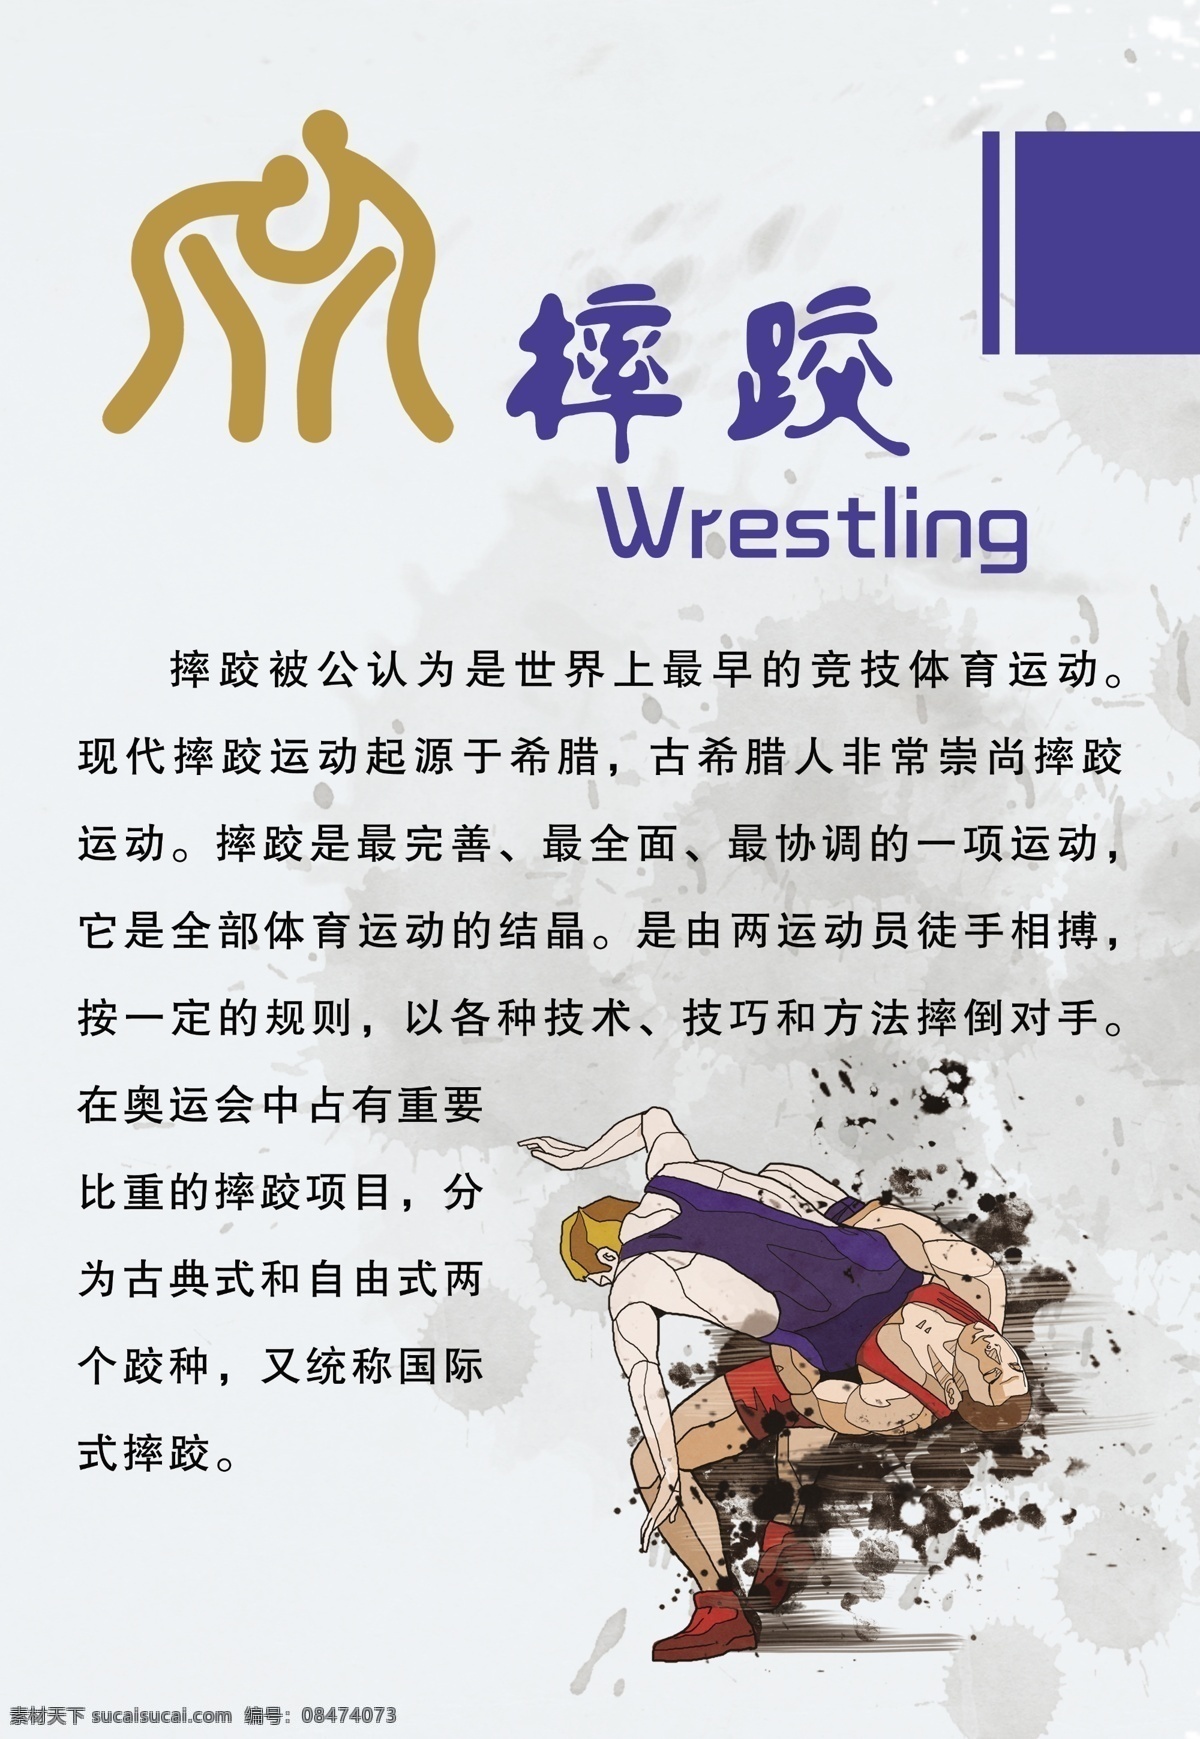 摔跤 wrestling 竞技体育运动 古典式 自由式 国际式 常永祥 分层 源文件